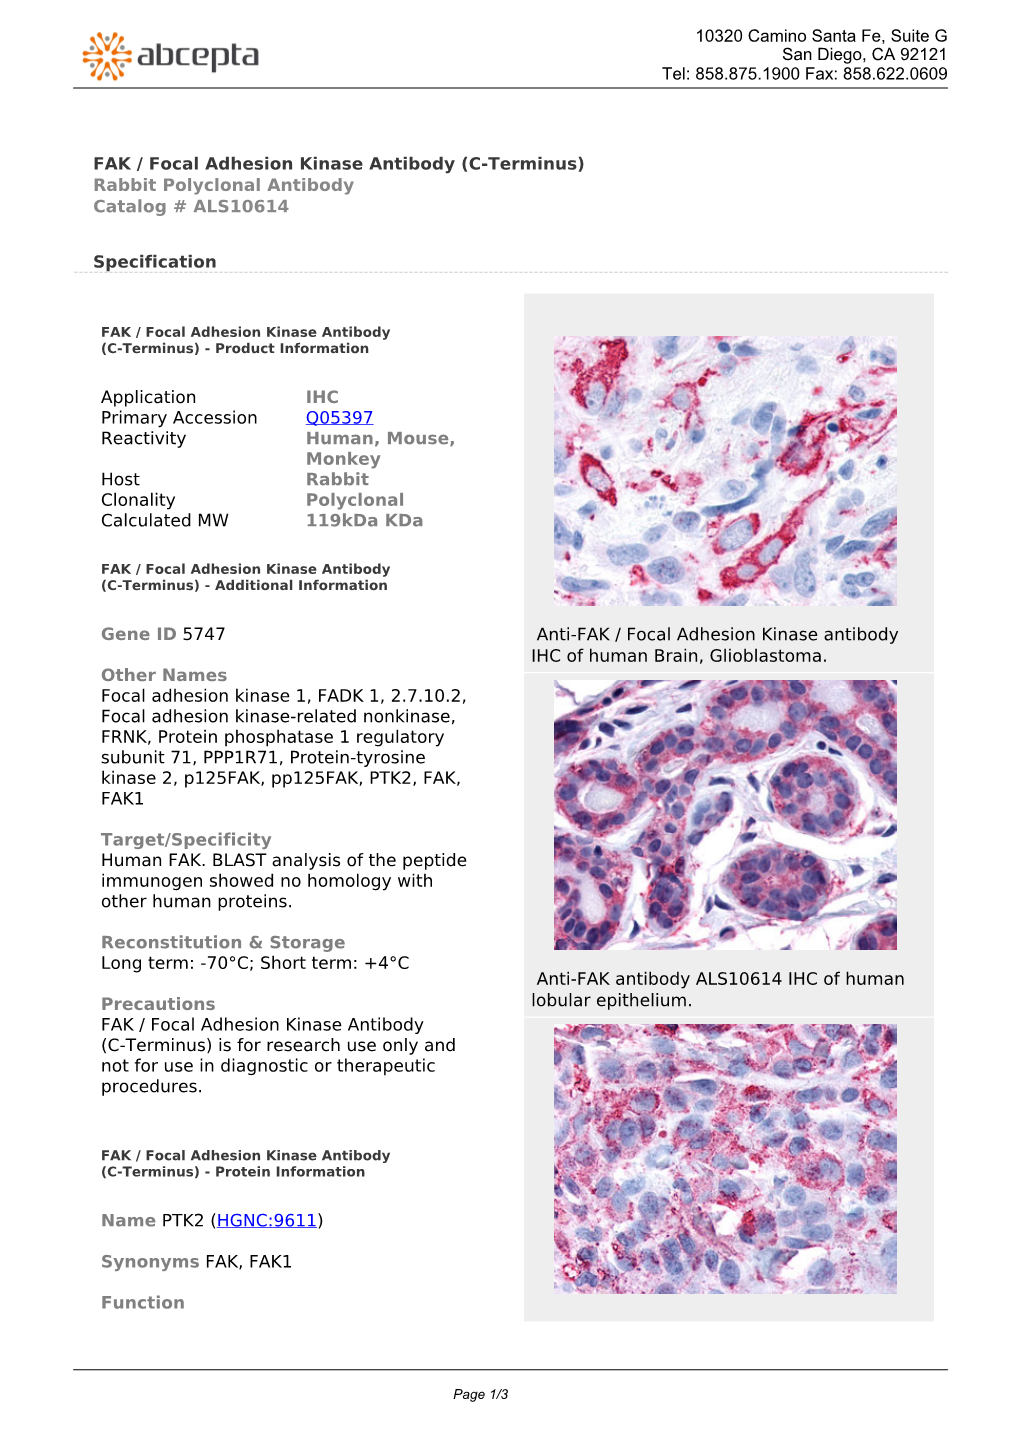 FAK / Focal Adhesion Kinase Antibody (C-Terminus) Rabbit Polyclonal Antibody Catalog # ALS10614